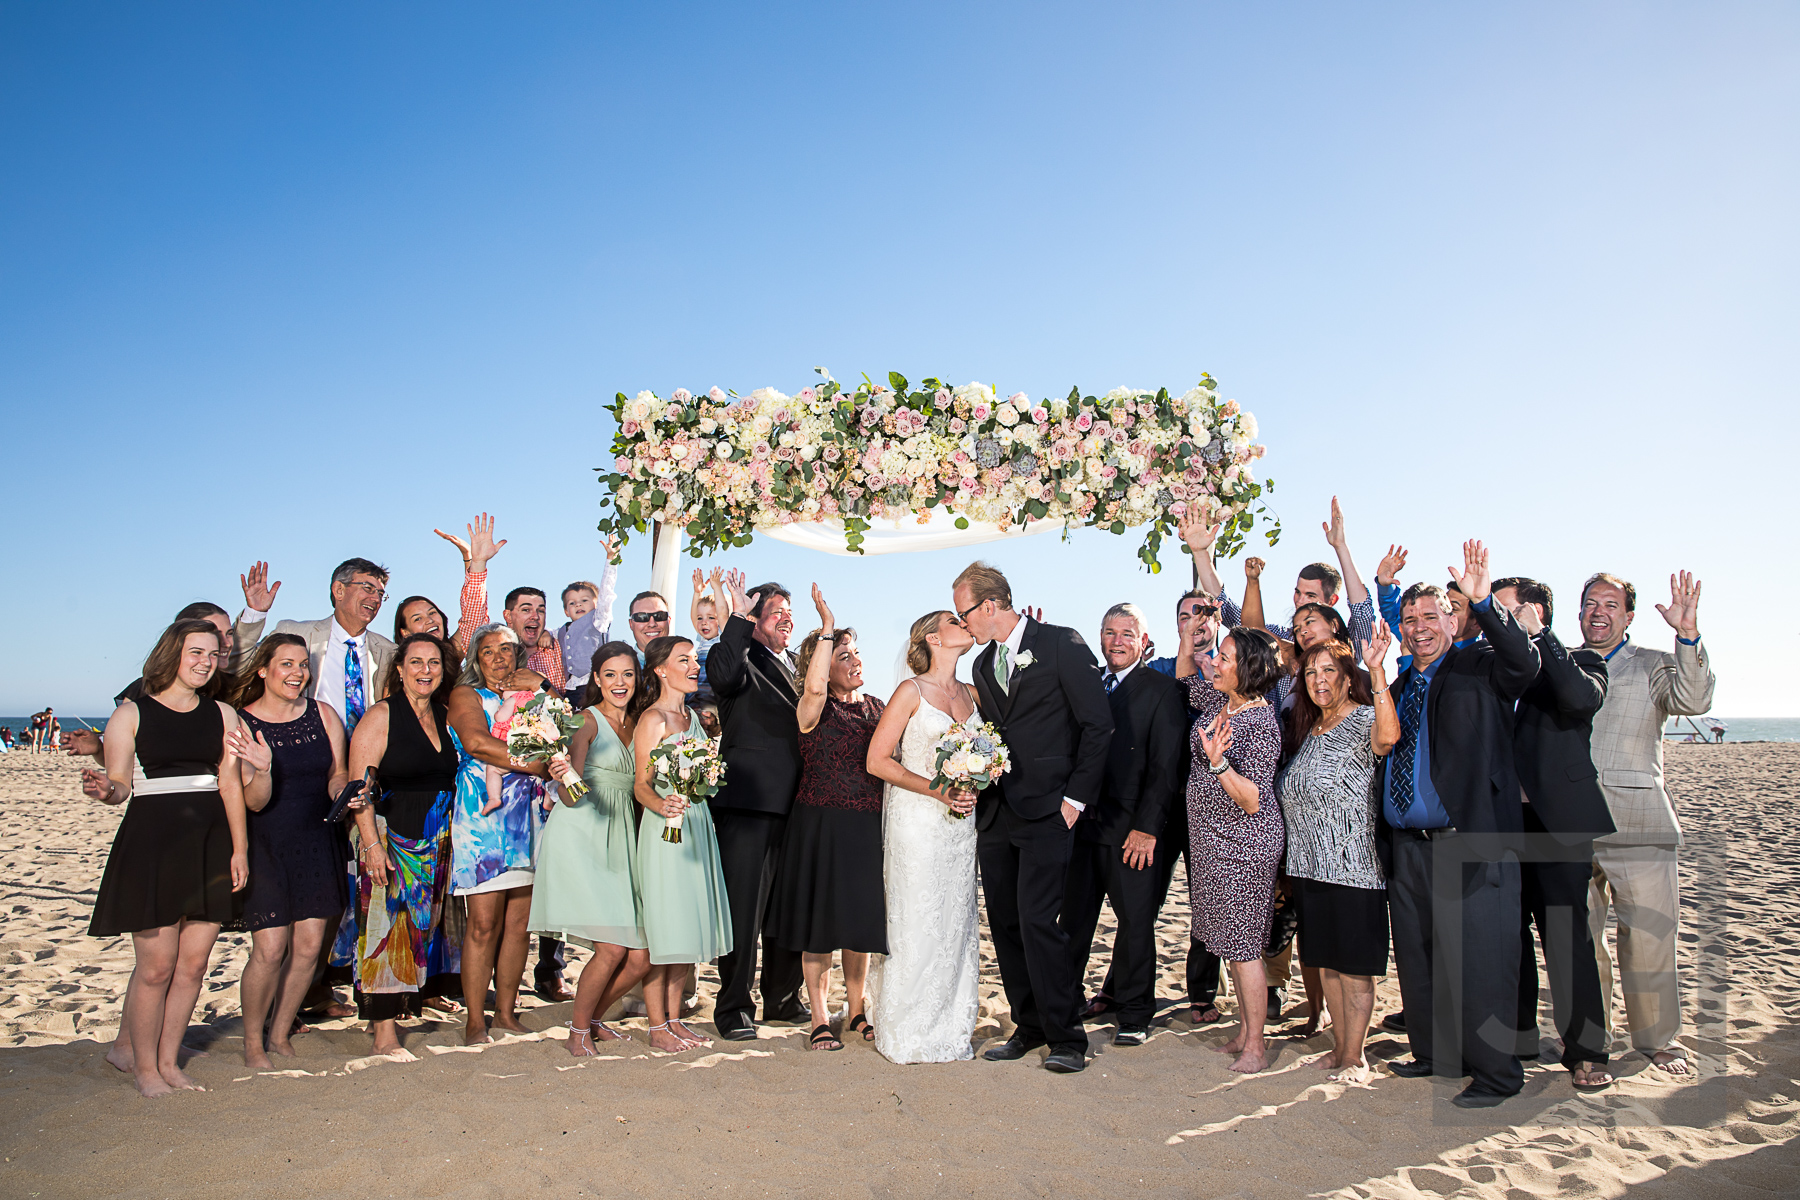 Hilton Waterfront Wedding Formals on Beach